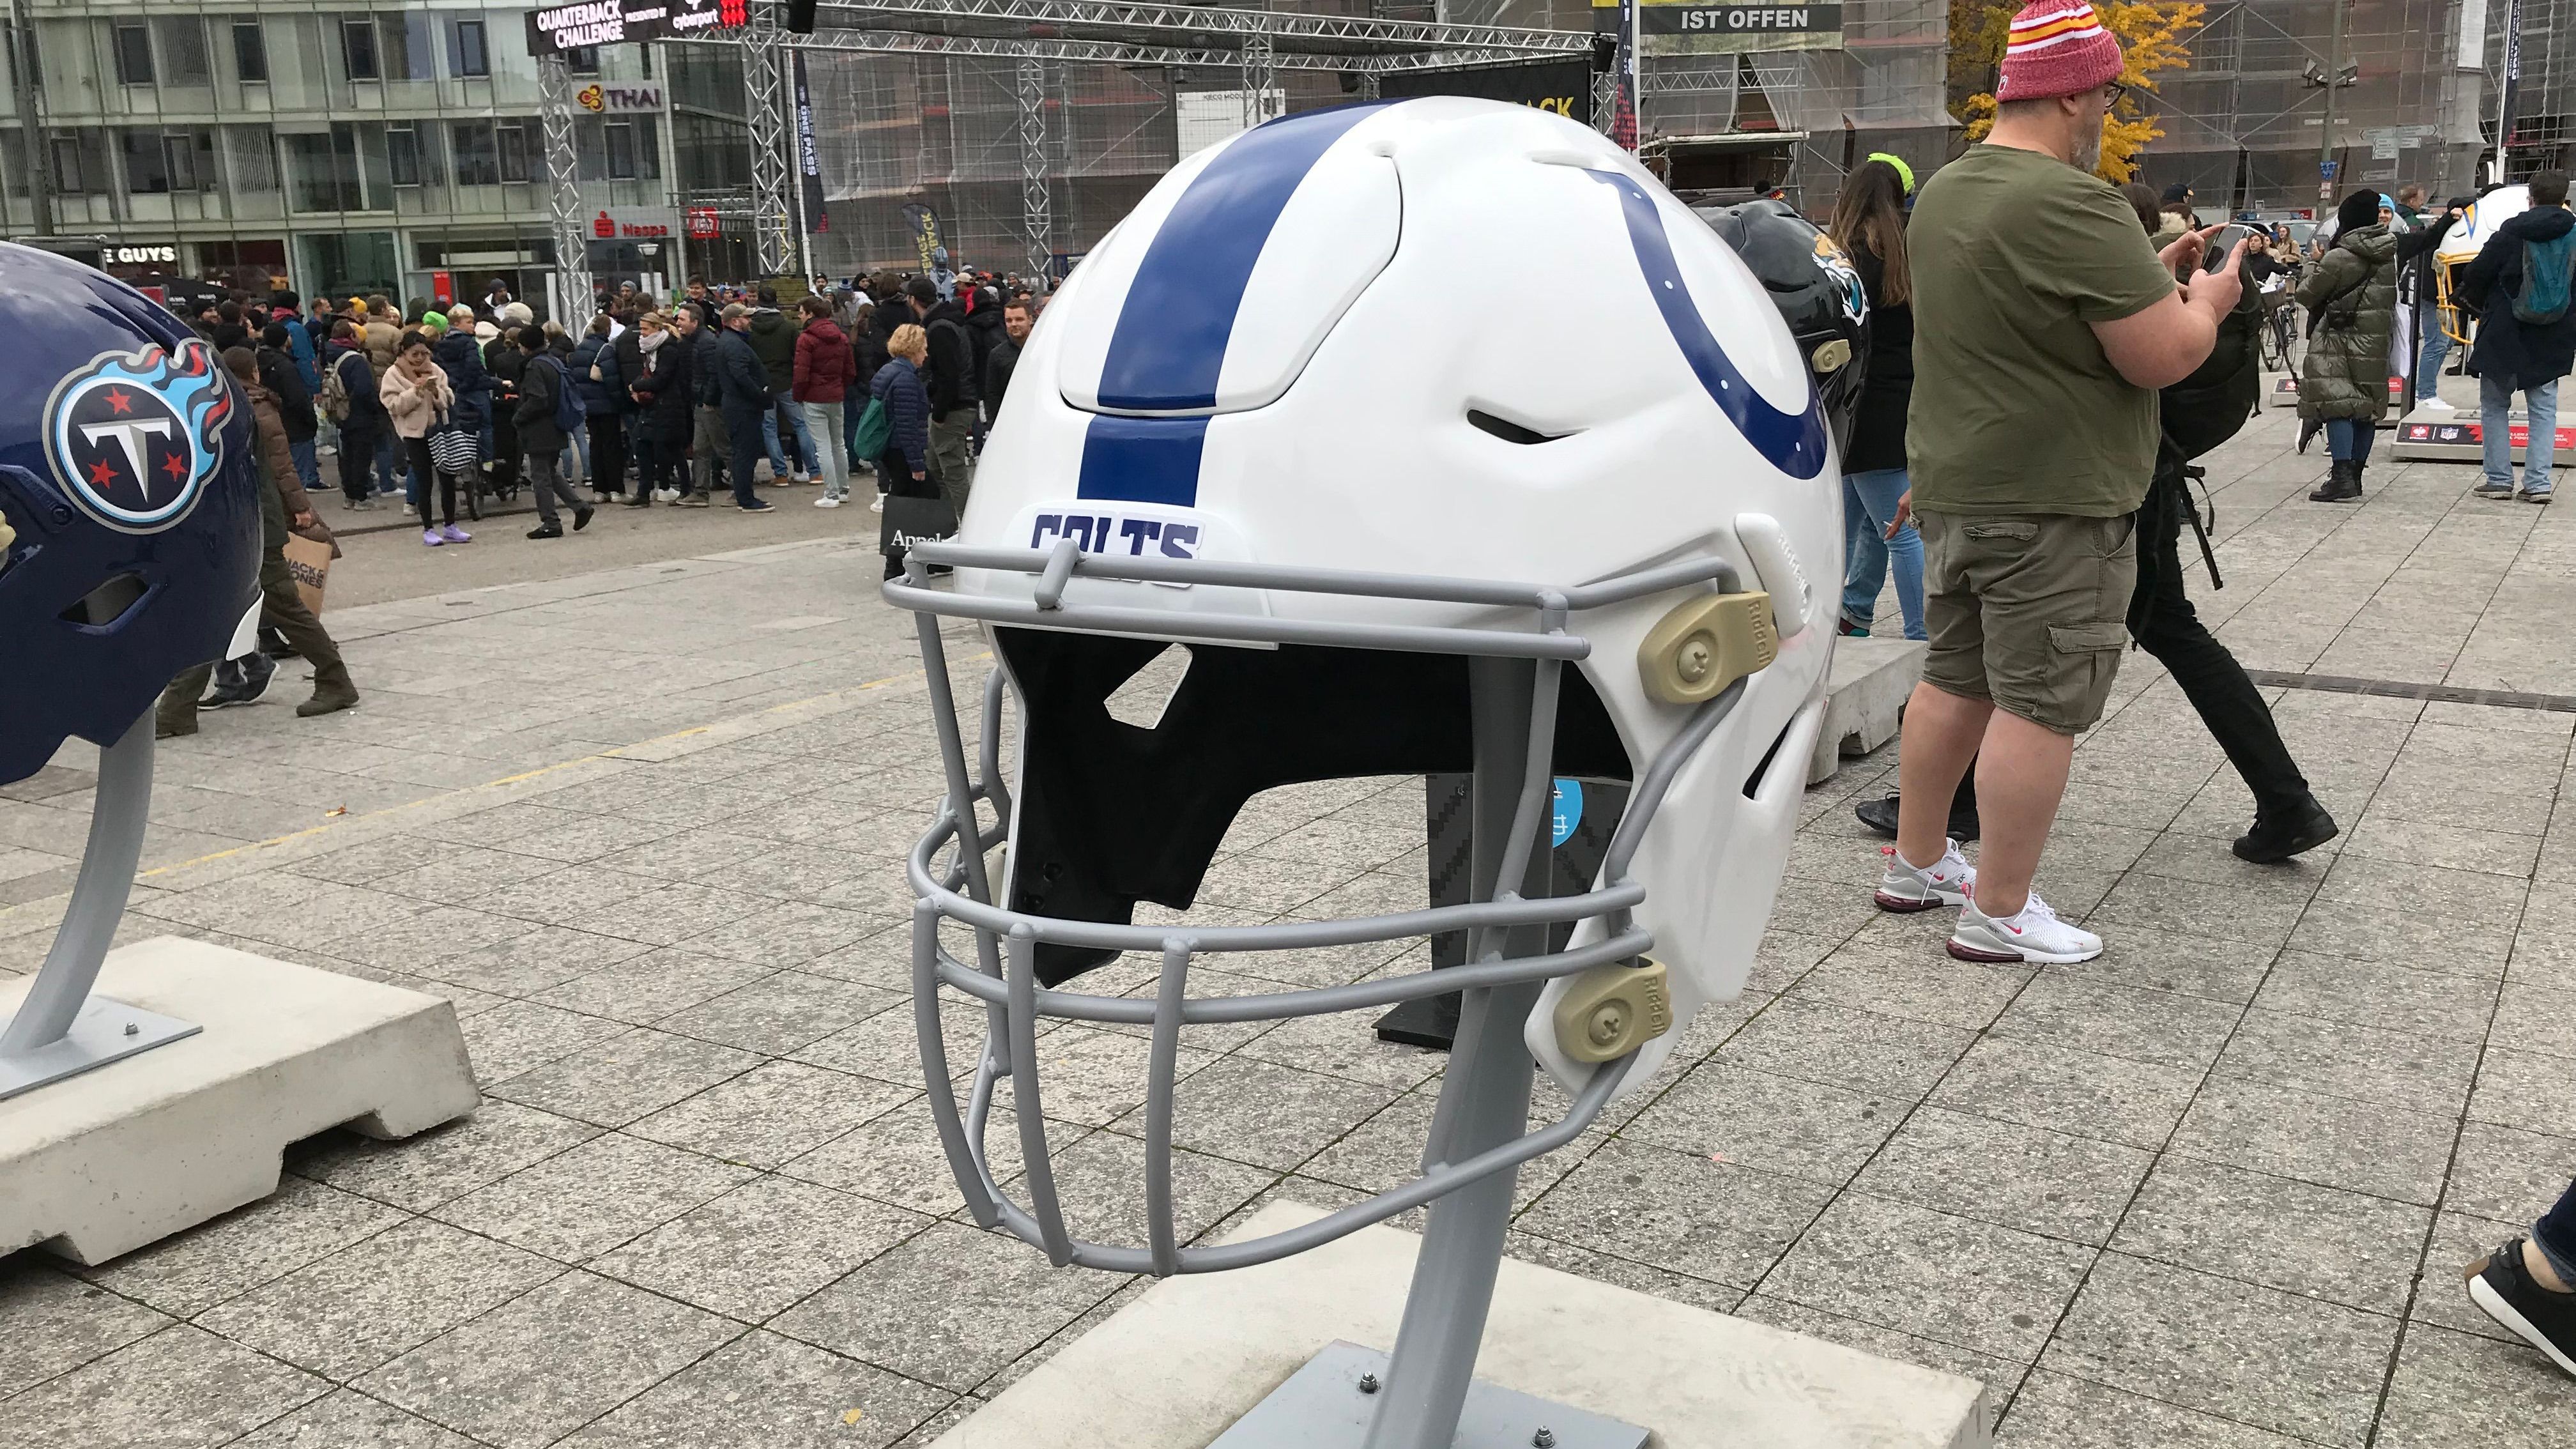 <strong>Wo seid ihr, Colts-Fans?</strong><br>Der Helm der Indianapolis Colts wartet währenddessen einsam und verlassen auf seine Fans. Traurig.